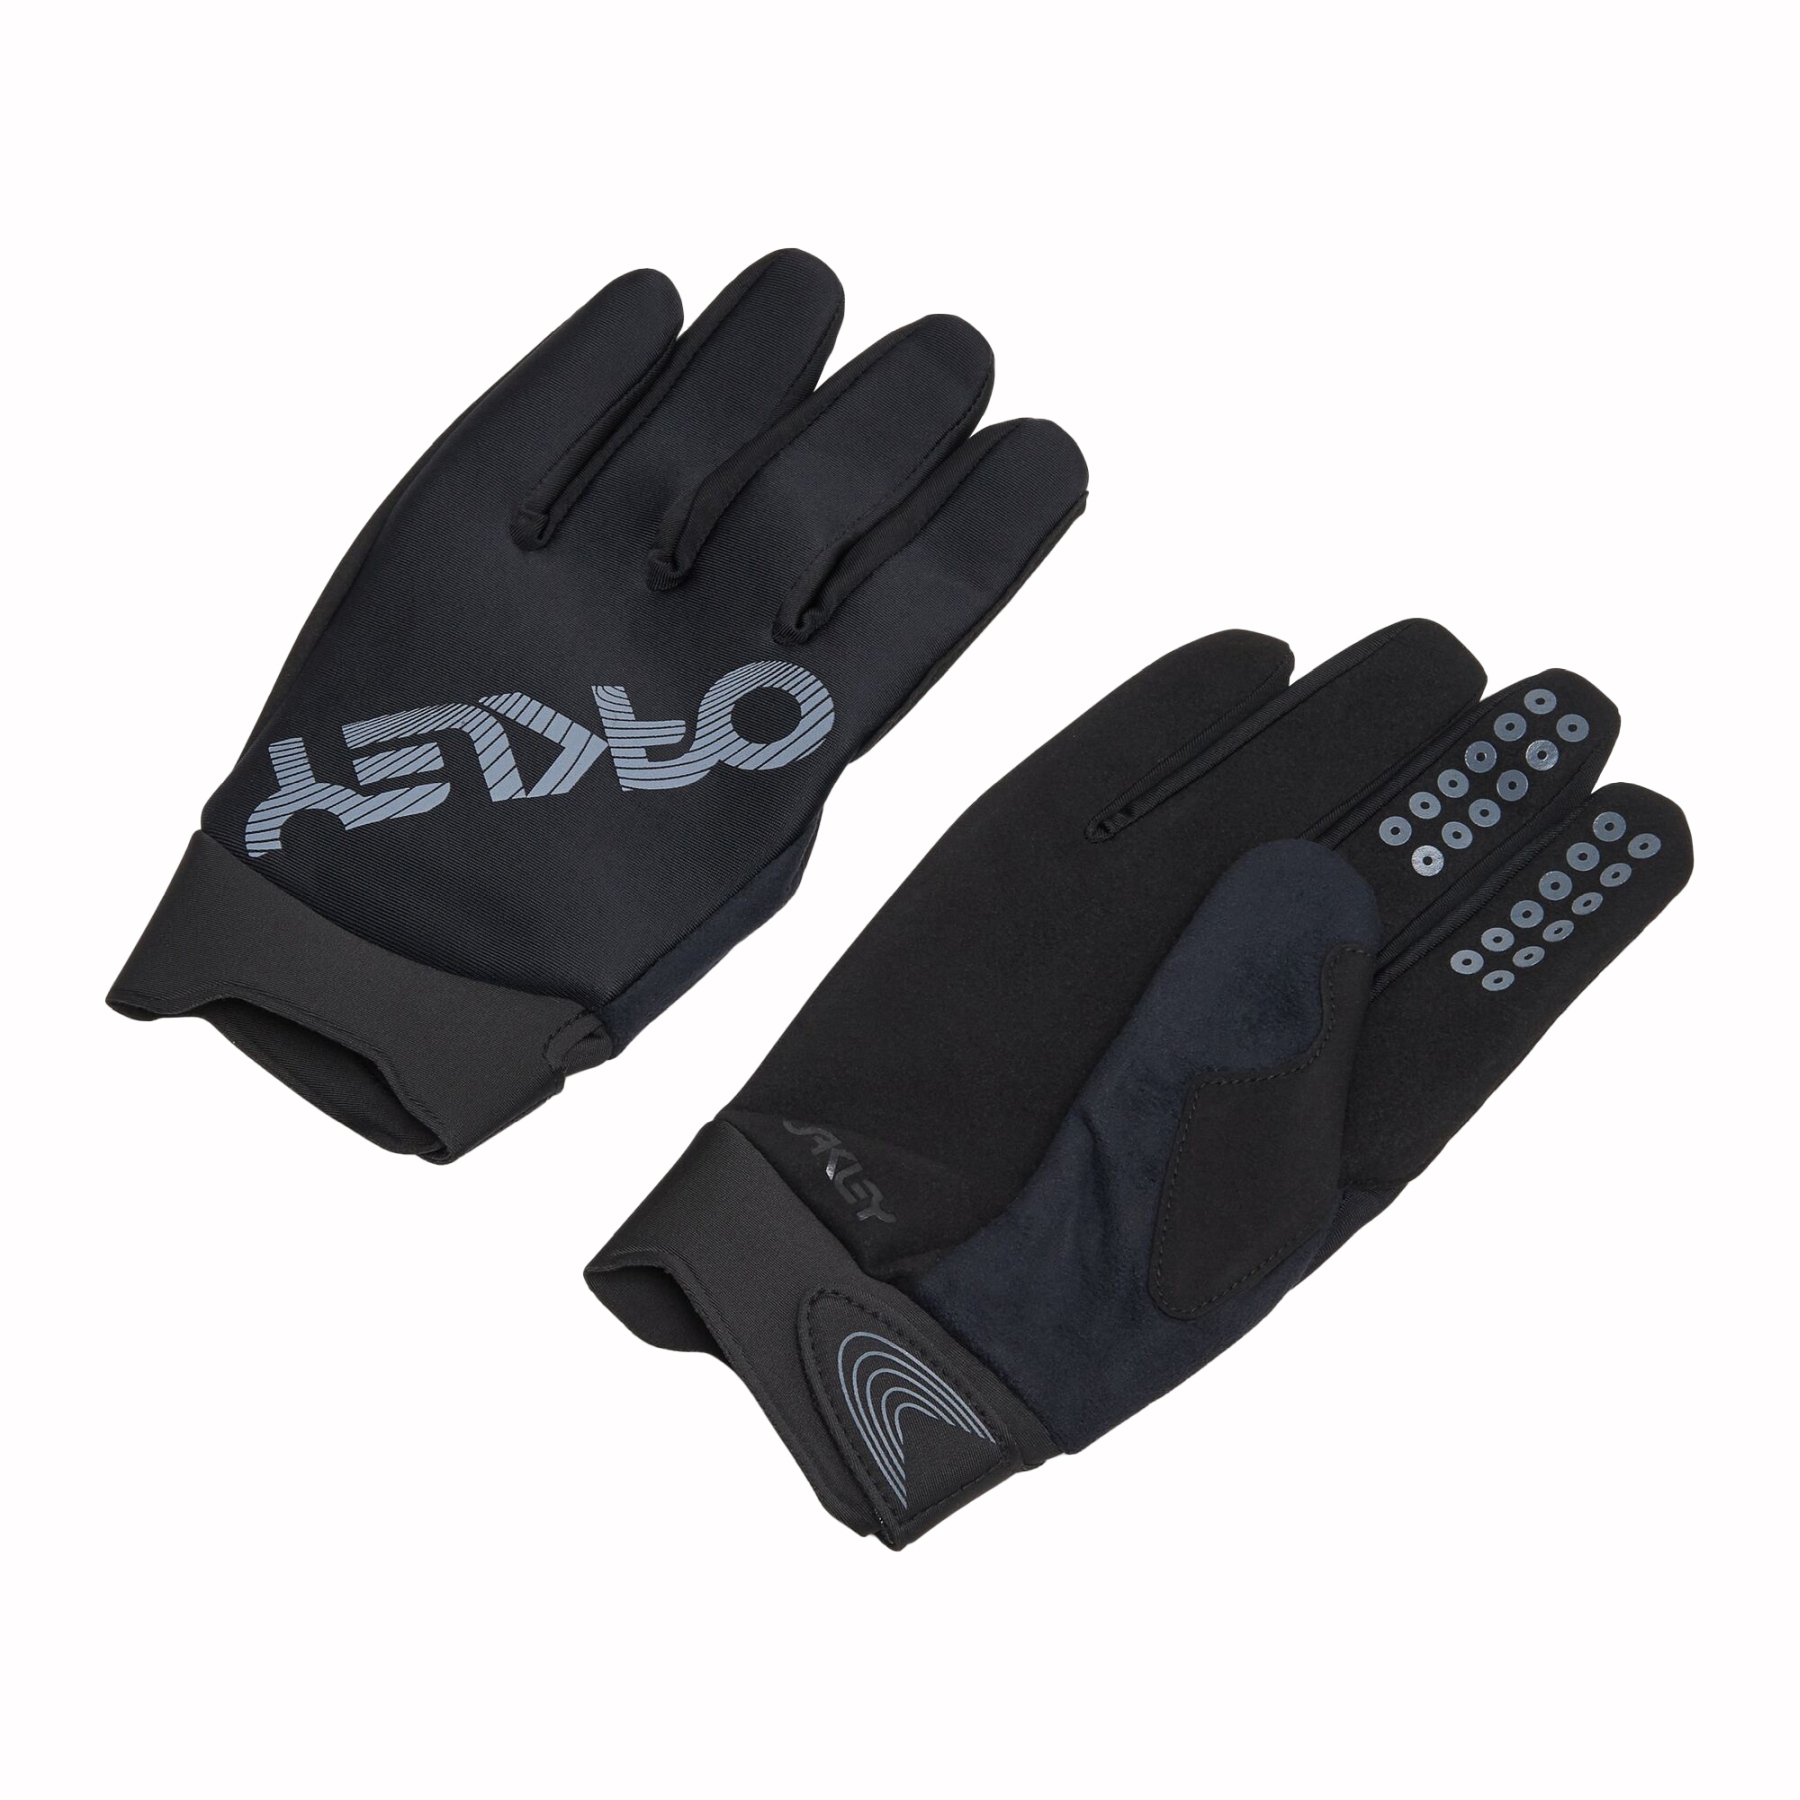 Produktbild von Oakley Seeker Thermal MTB Handschuhe - Blackout